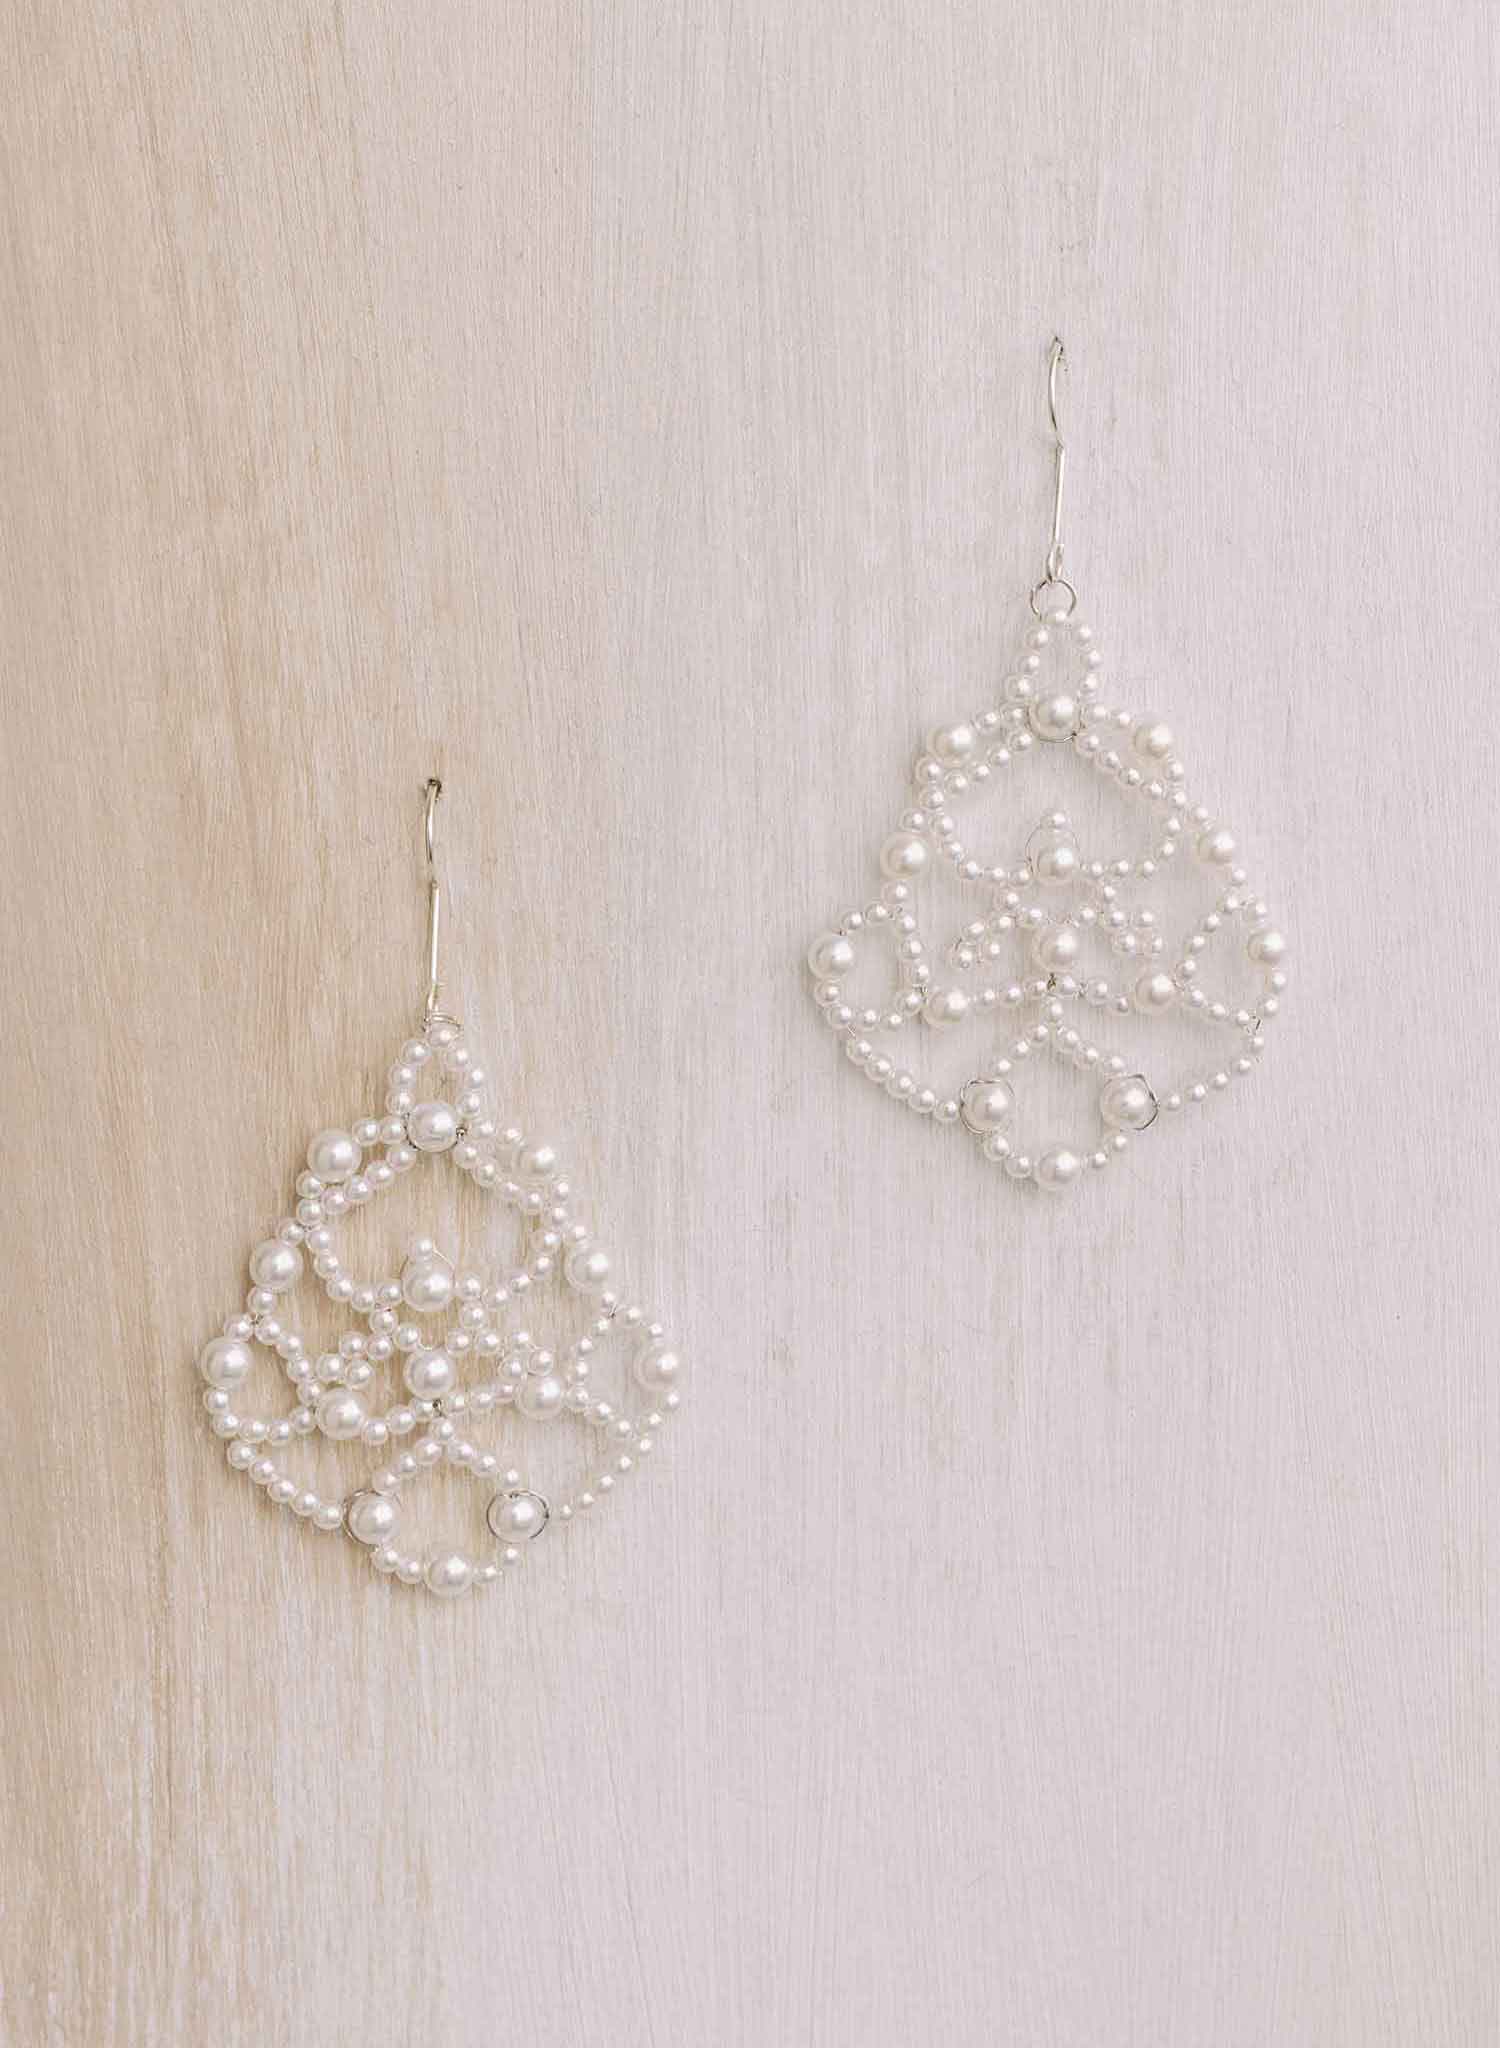 Pearl lace earrings - Style #2119